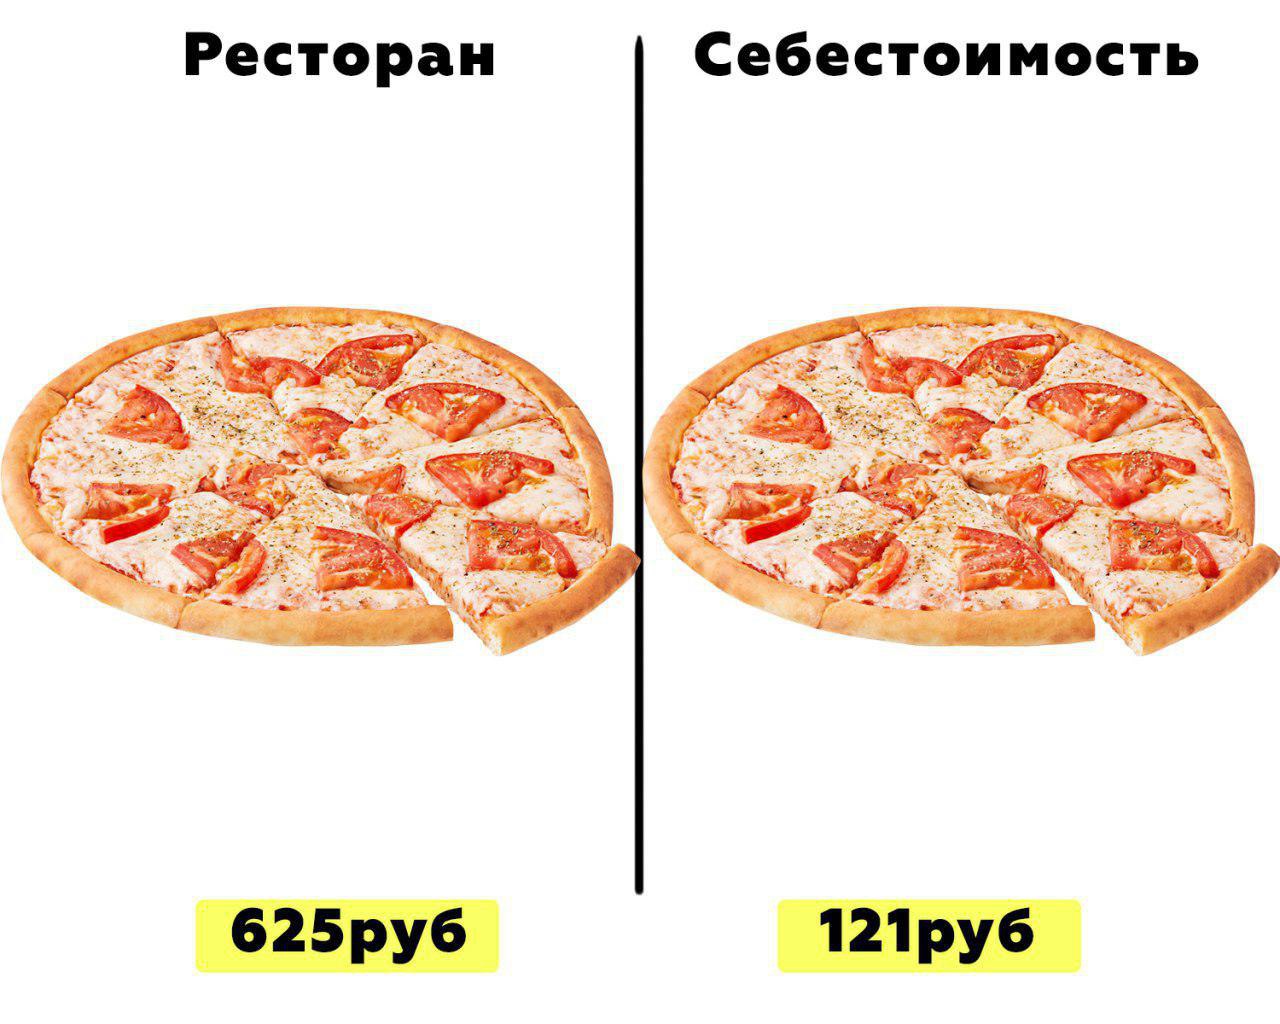 технологическая карта на пиццу пепперони фото 33